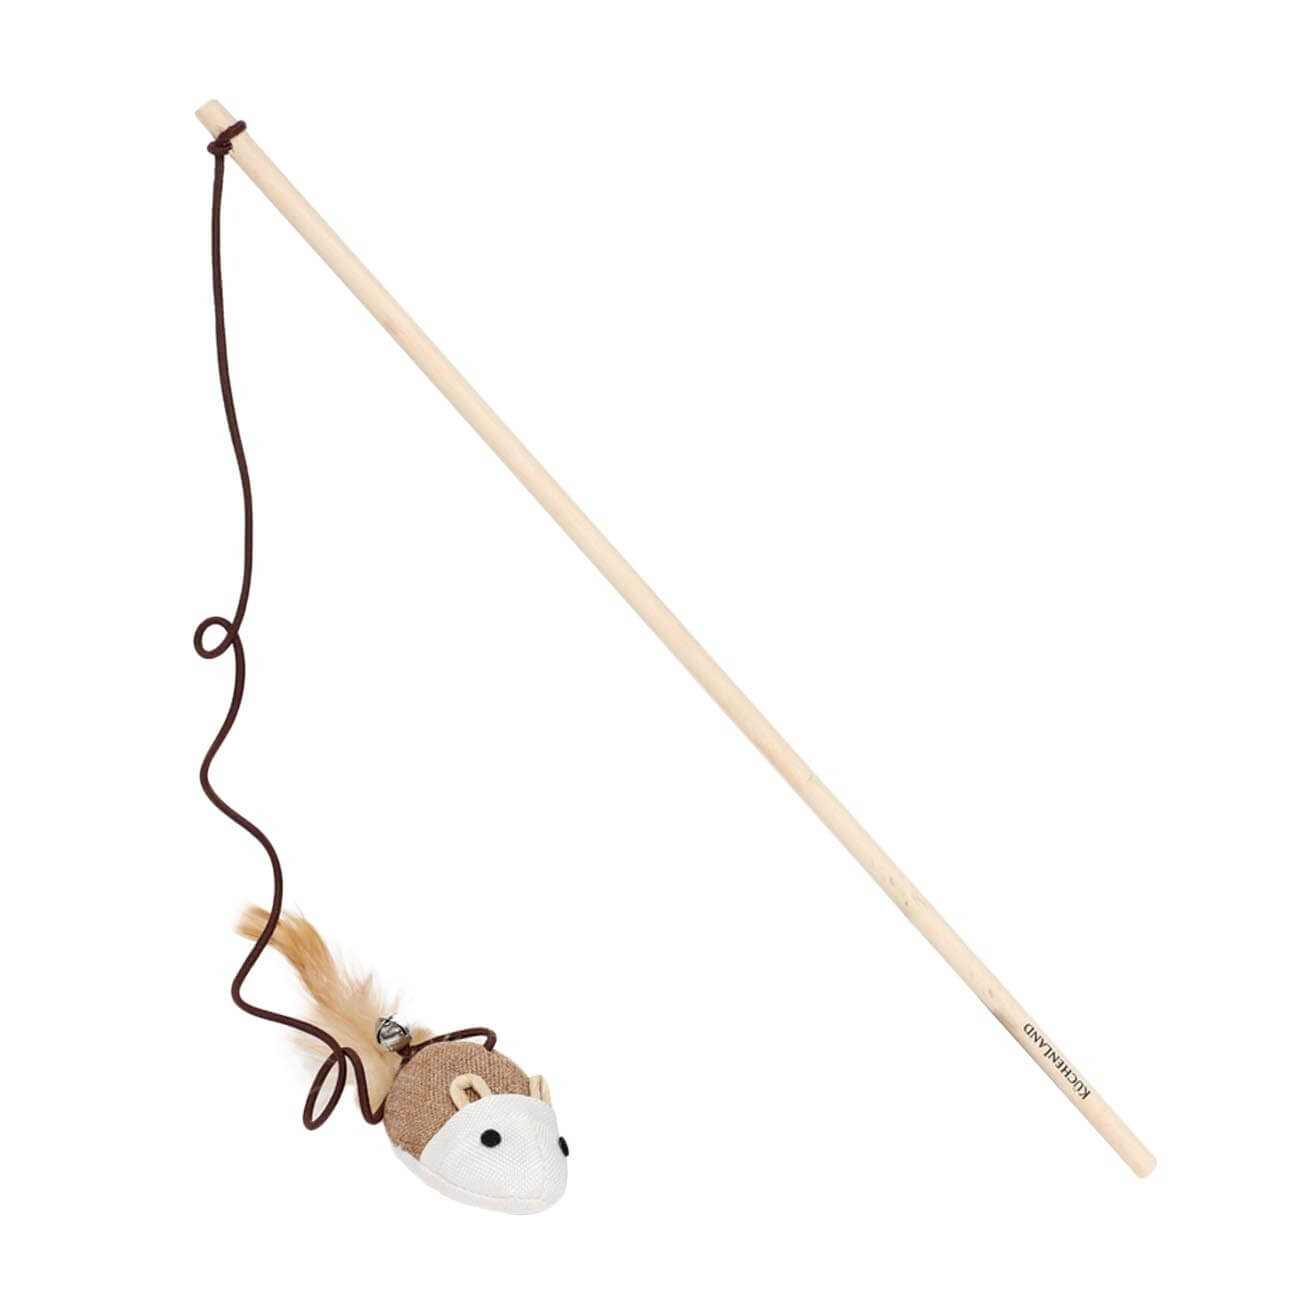 Игрушка-удочка для кошек, 1,1 м, с колокольчиком, дерево/полиэстер, Мышь, Playful cat игрушка мышь в шаре 6 см синяя розовая